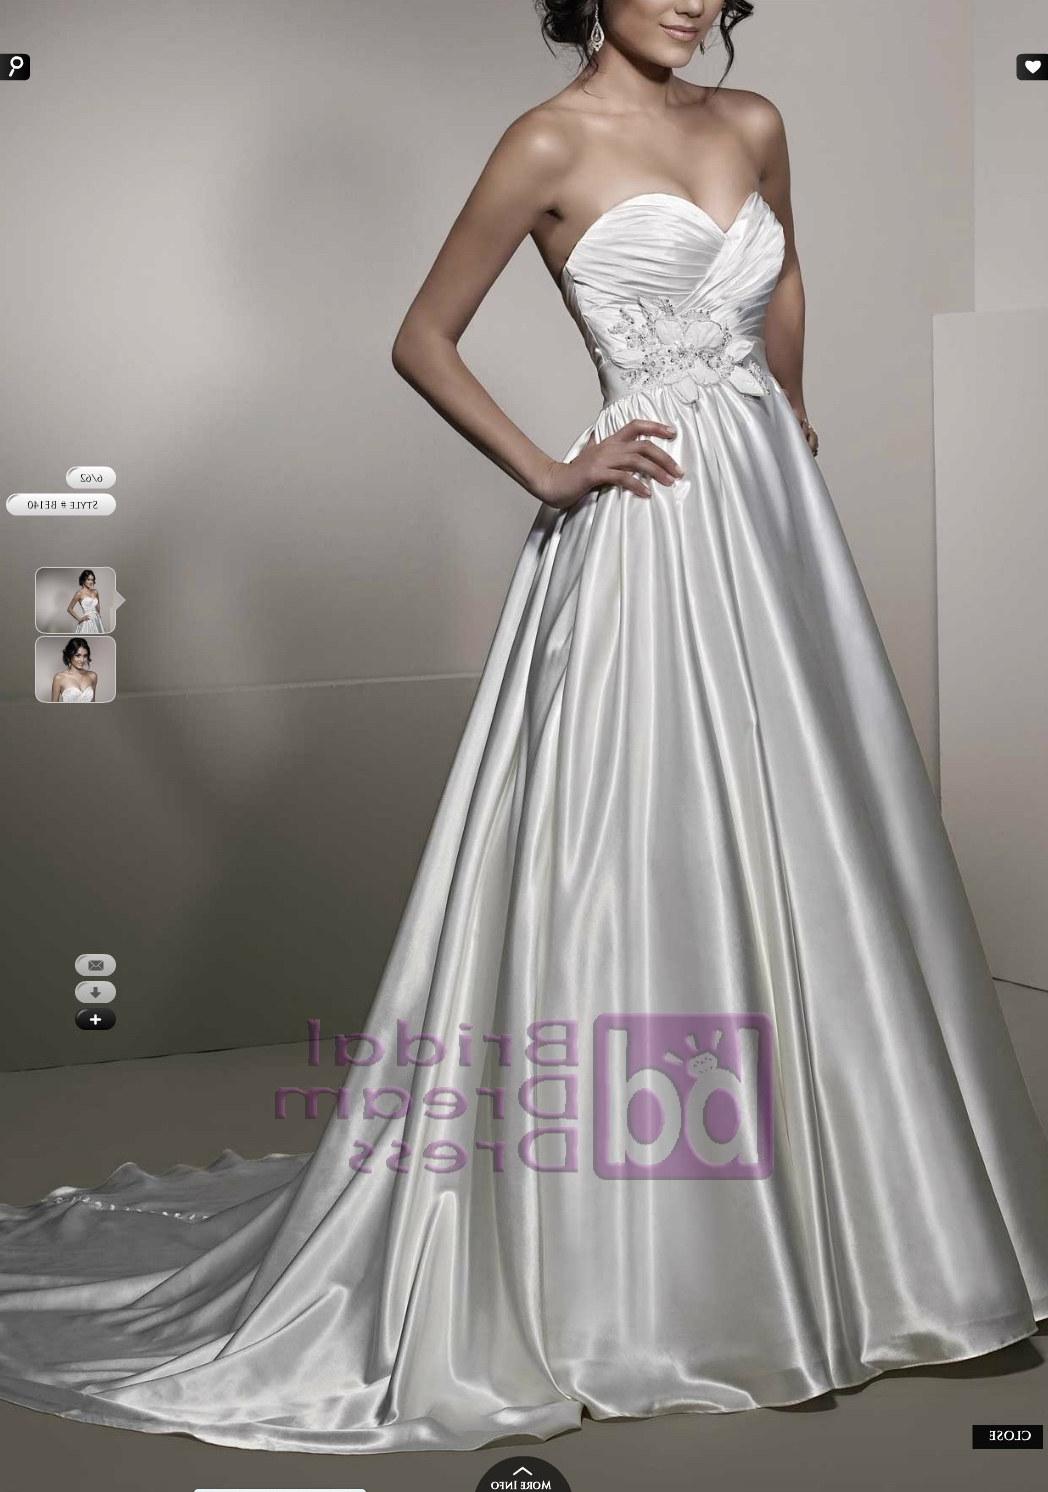 Ella Rosa Wedding Dress be140